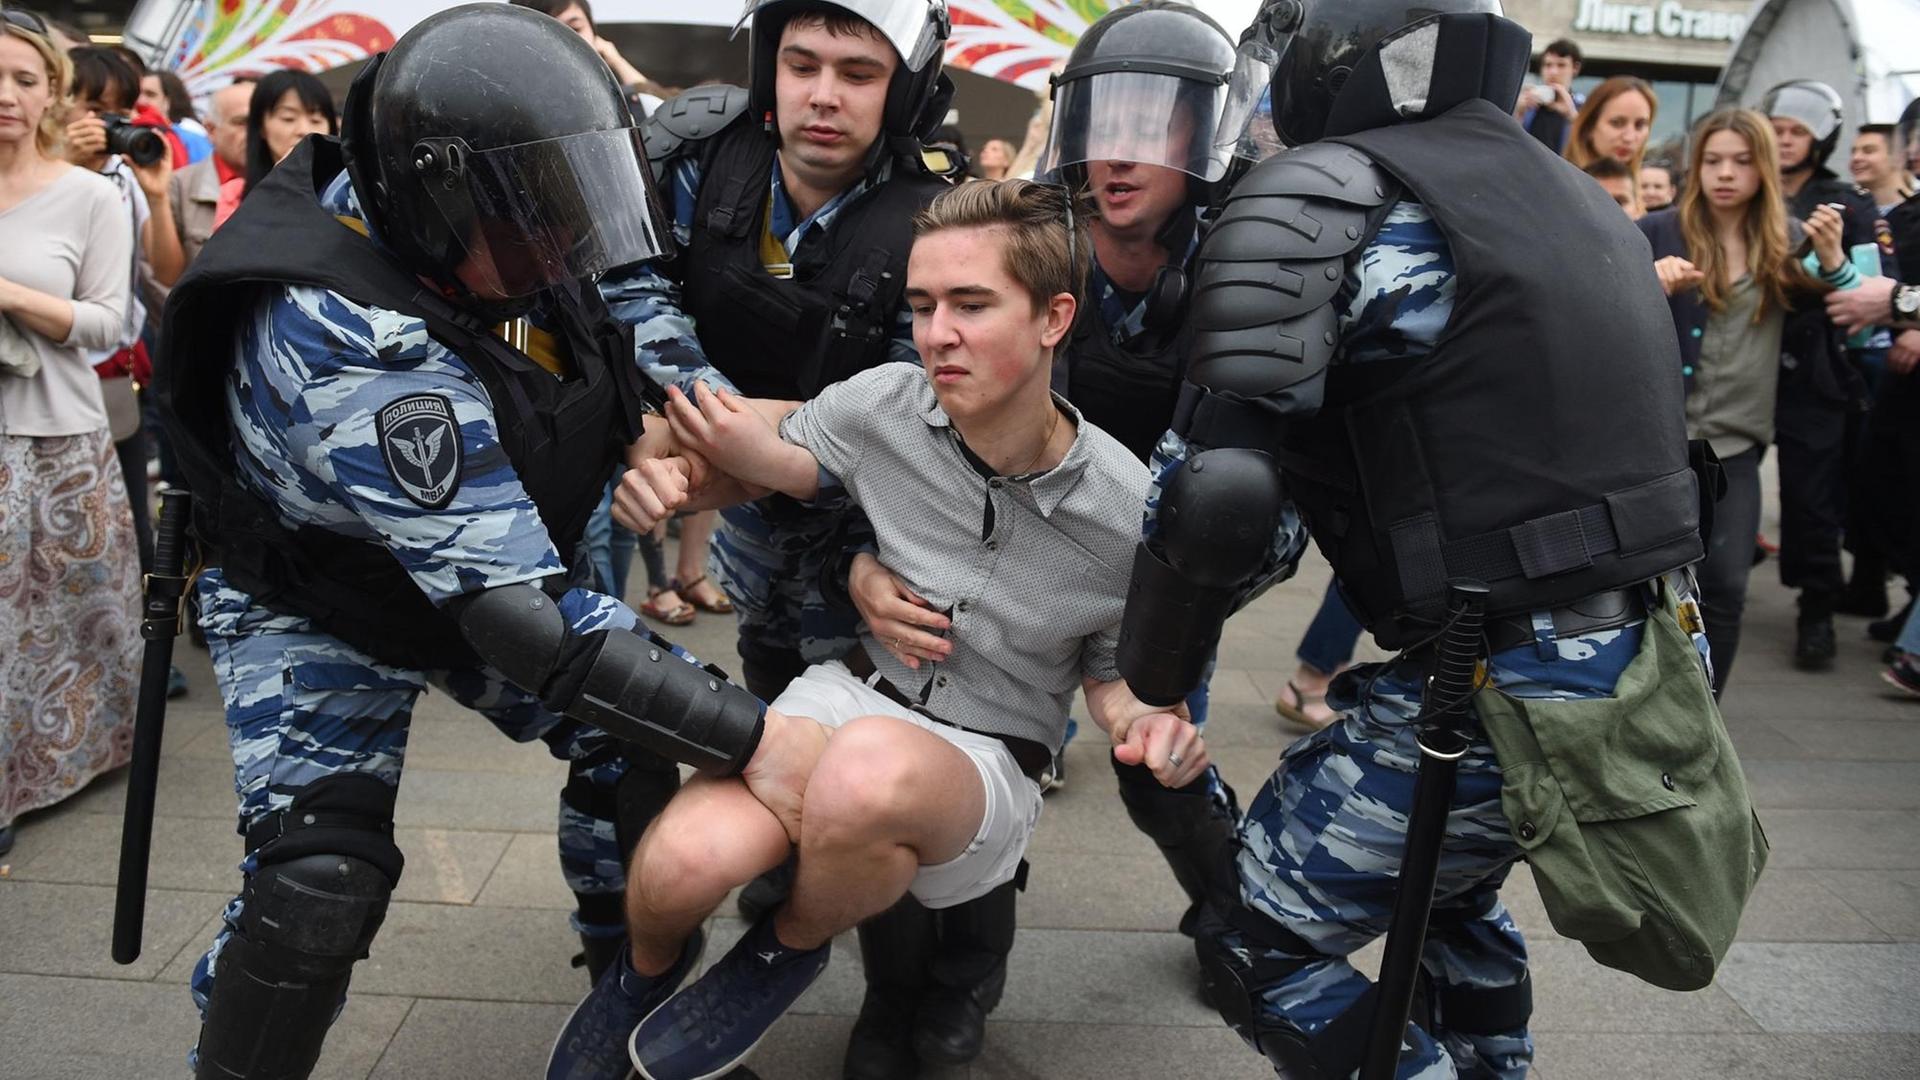 Polizisten in Schutzausrüstung tragen einen jungen Demonstranten davon.